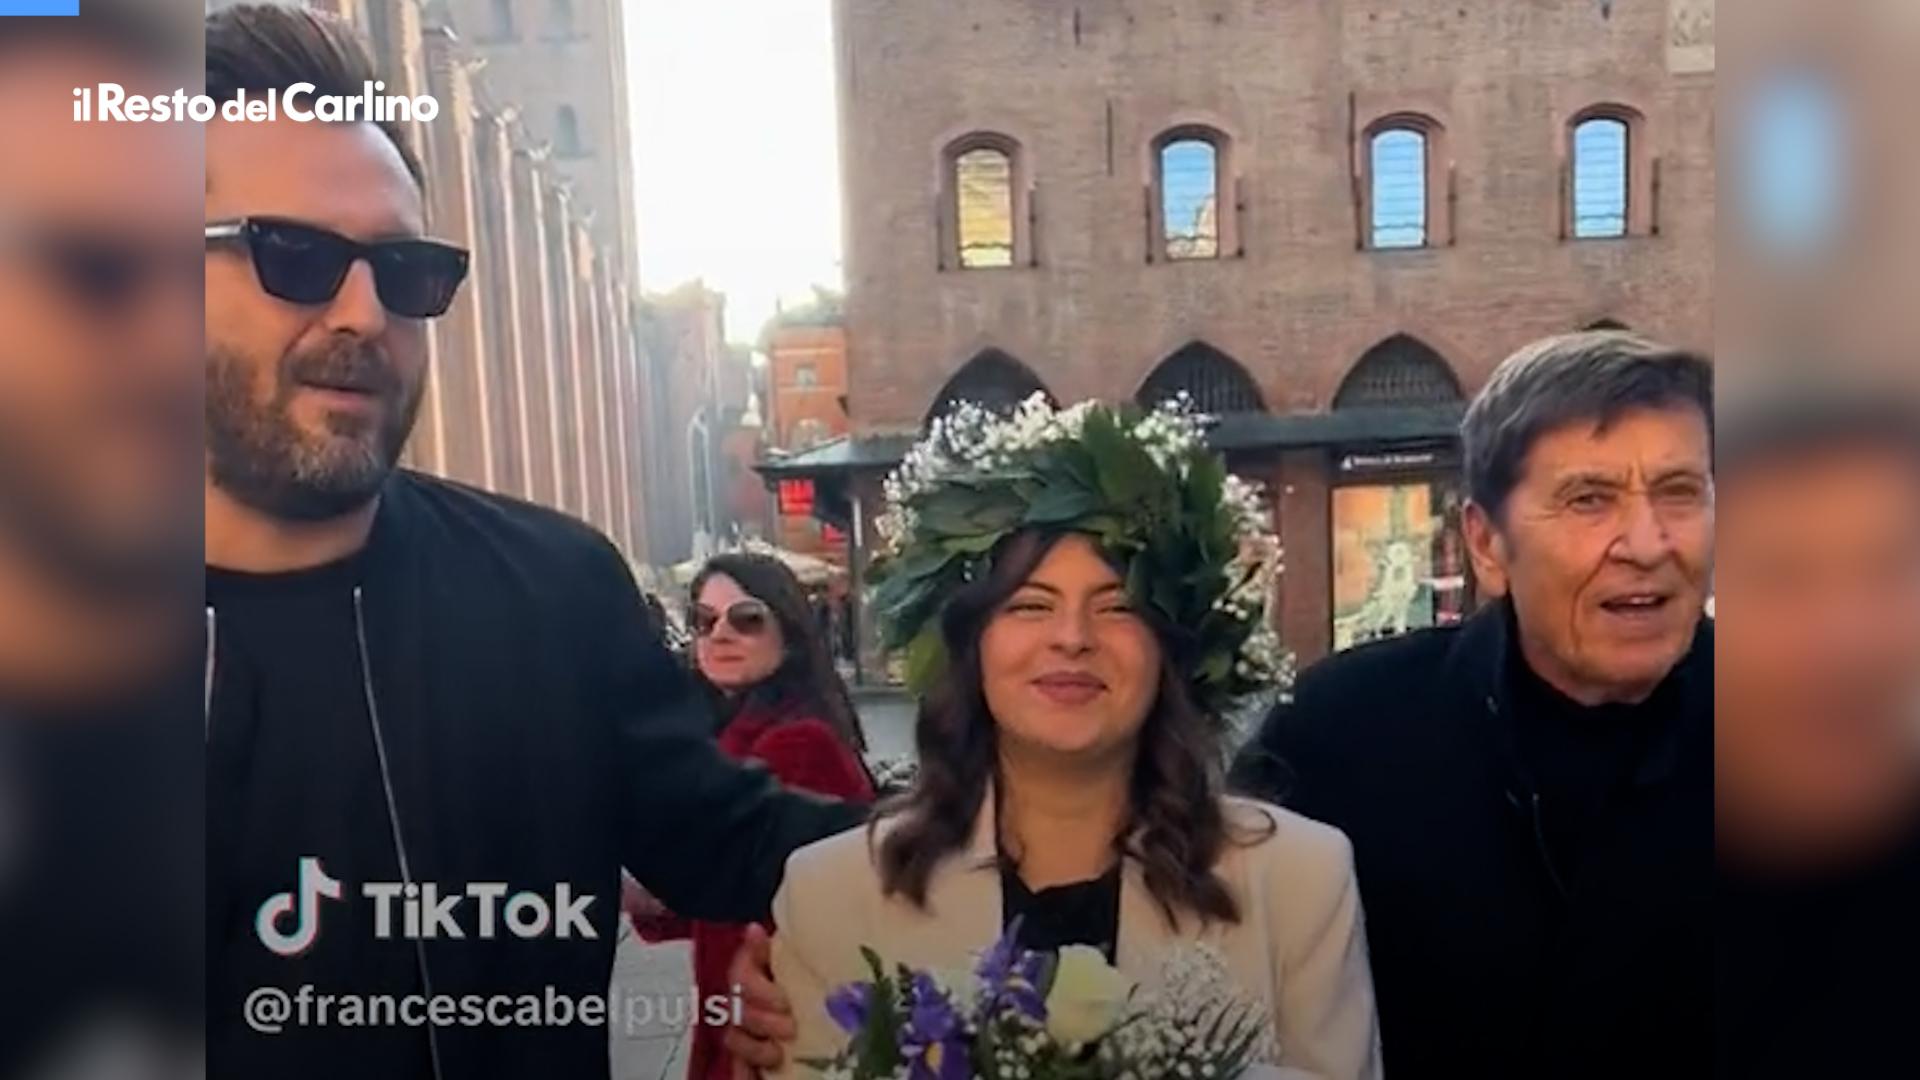 Laurea a Bologna con sorpresa: per la foto arrivano Cesare Cremonini e Gianni Morandi. "Giuro che mi hanno fermato loro”